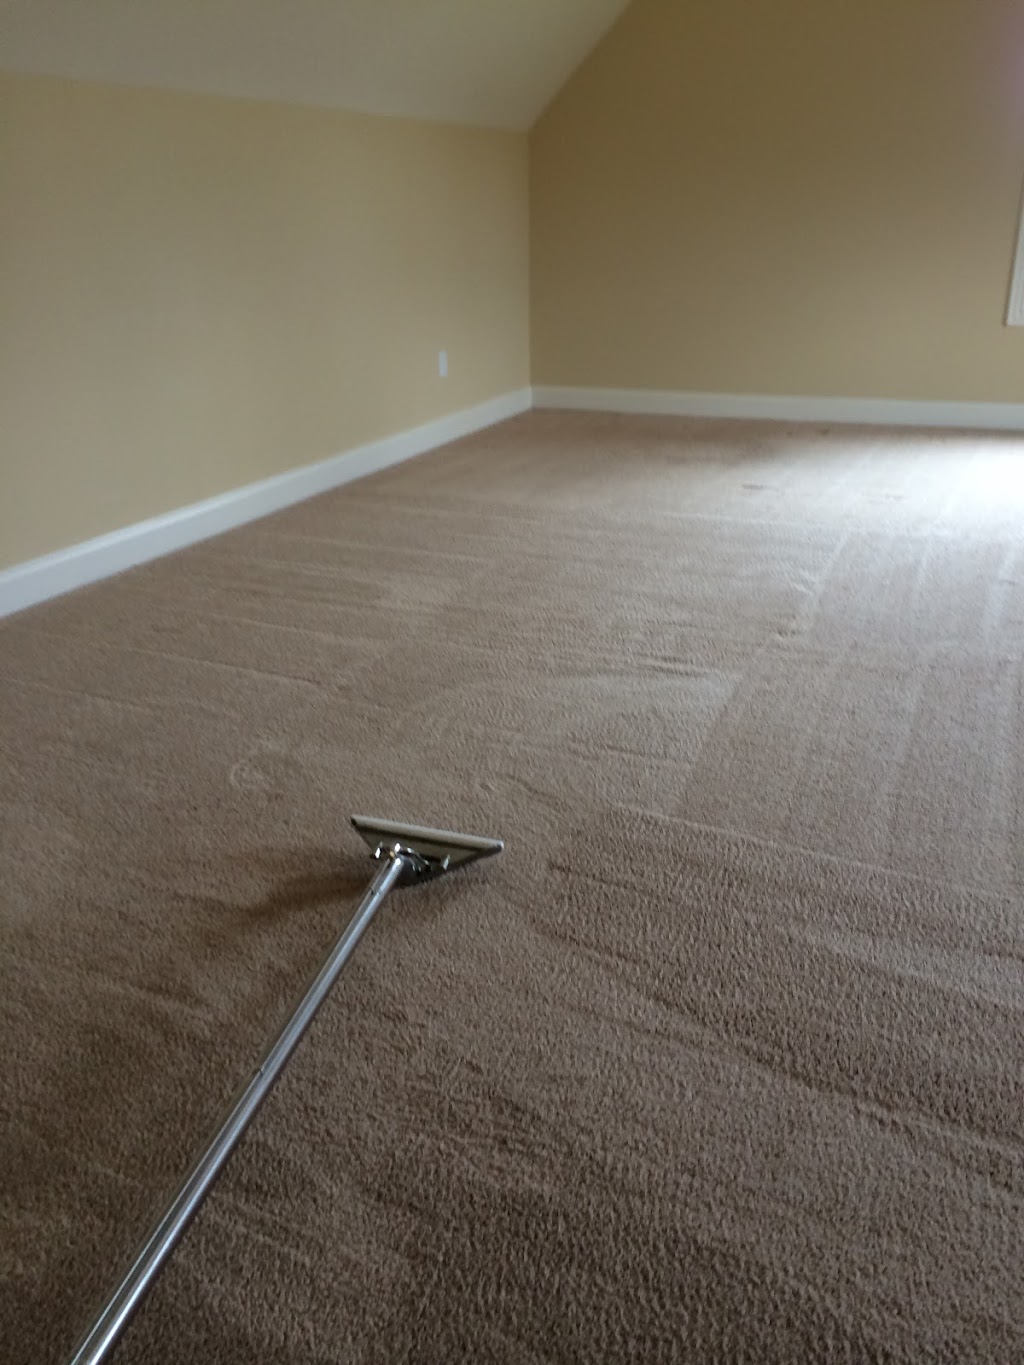 Music City Carpet Cleaning | 1042 Bending Chestnut Dr, Lebanon, TN 37087, USA | Phone: (615) 443-2140